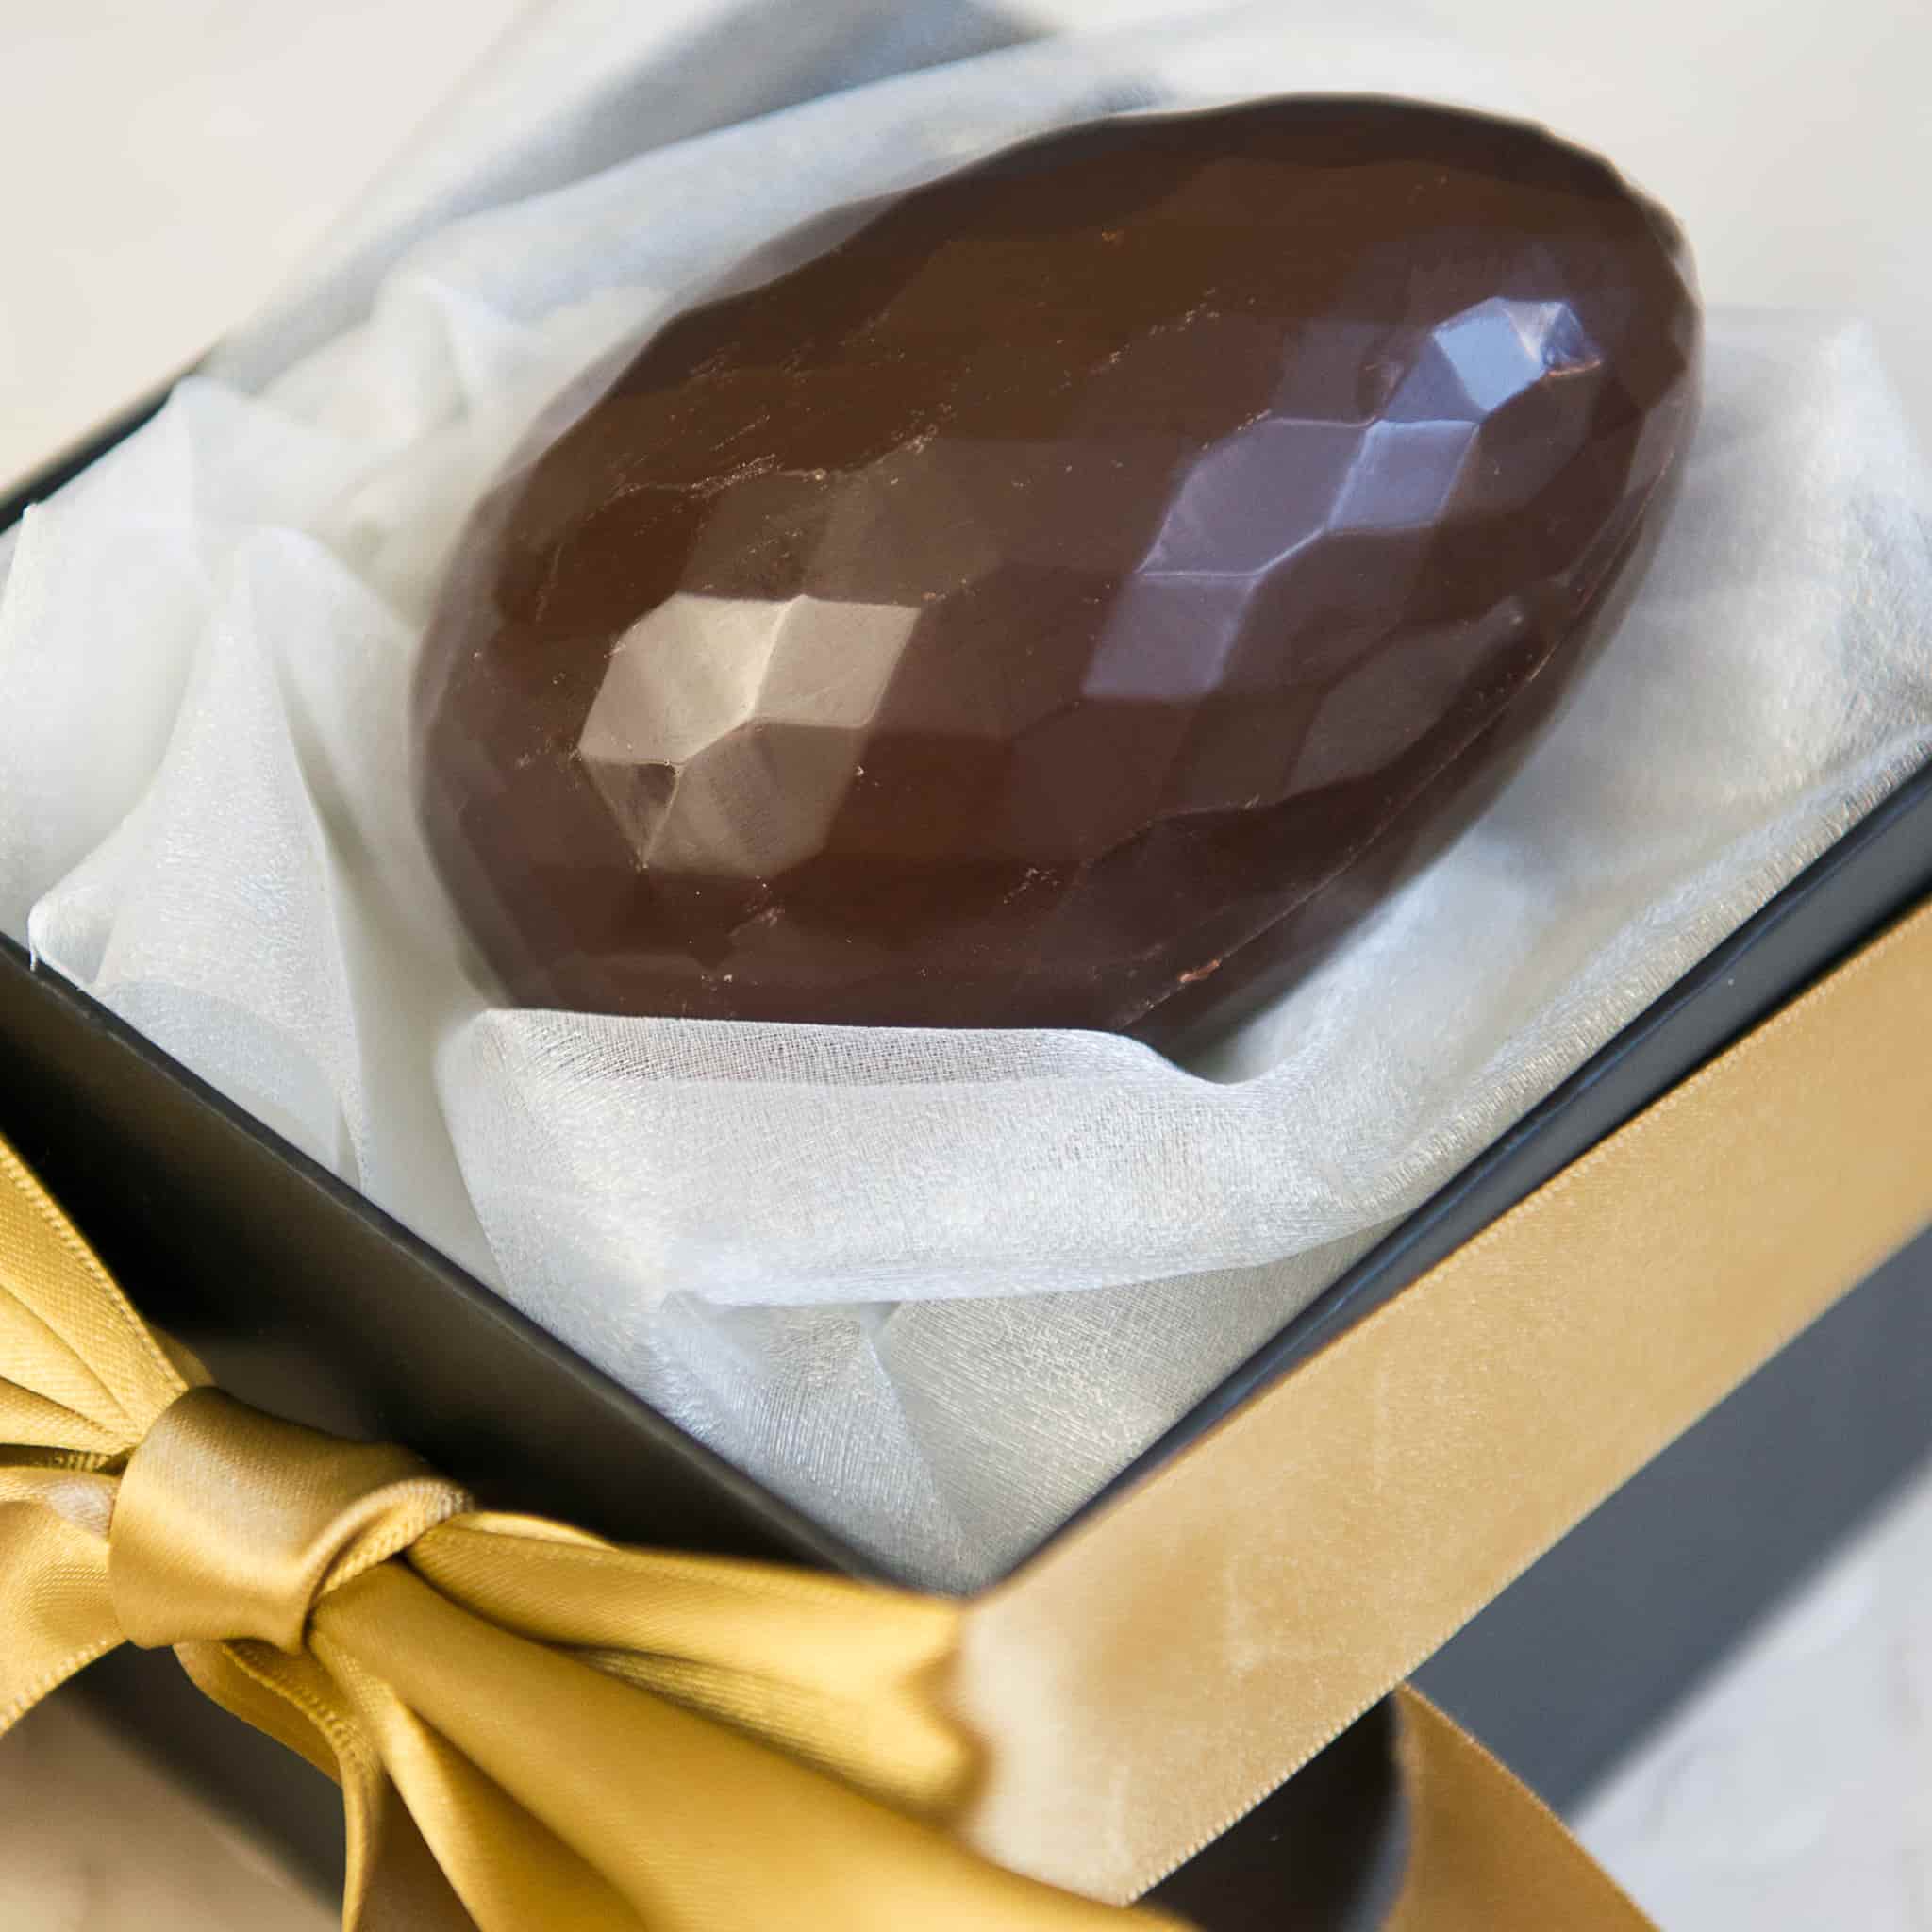 Make Your Own Luxury Easter Egg Kit